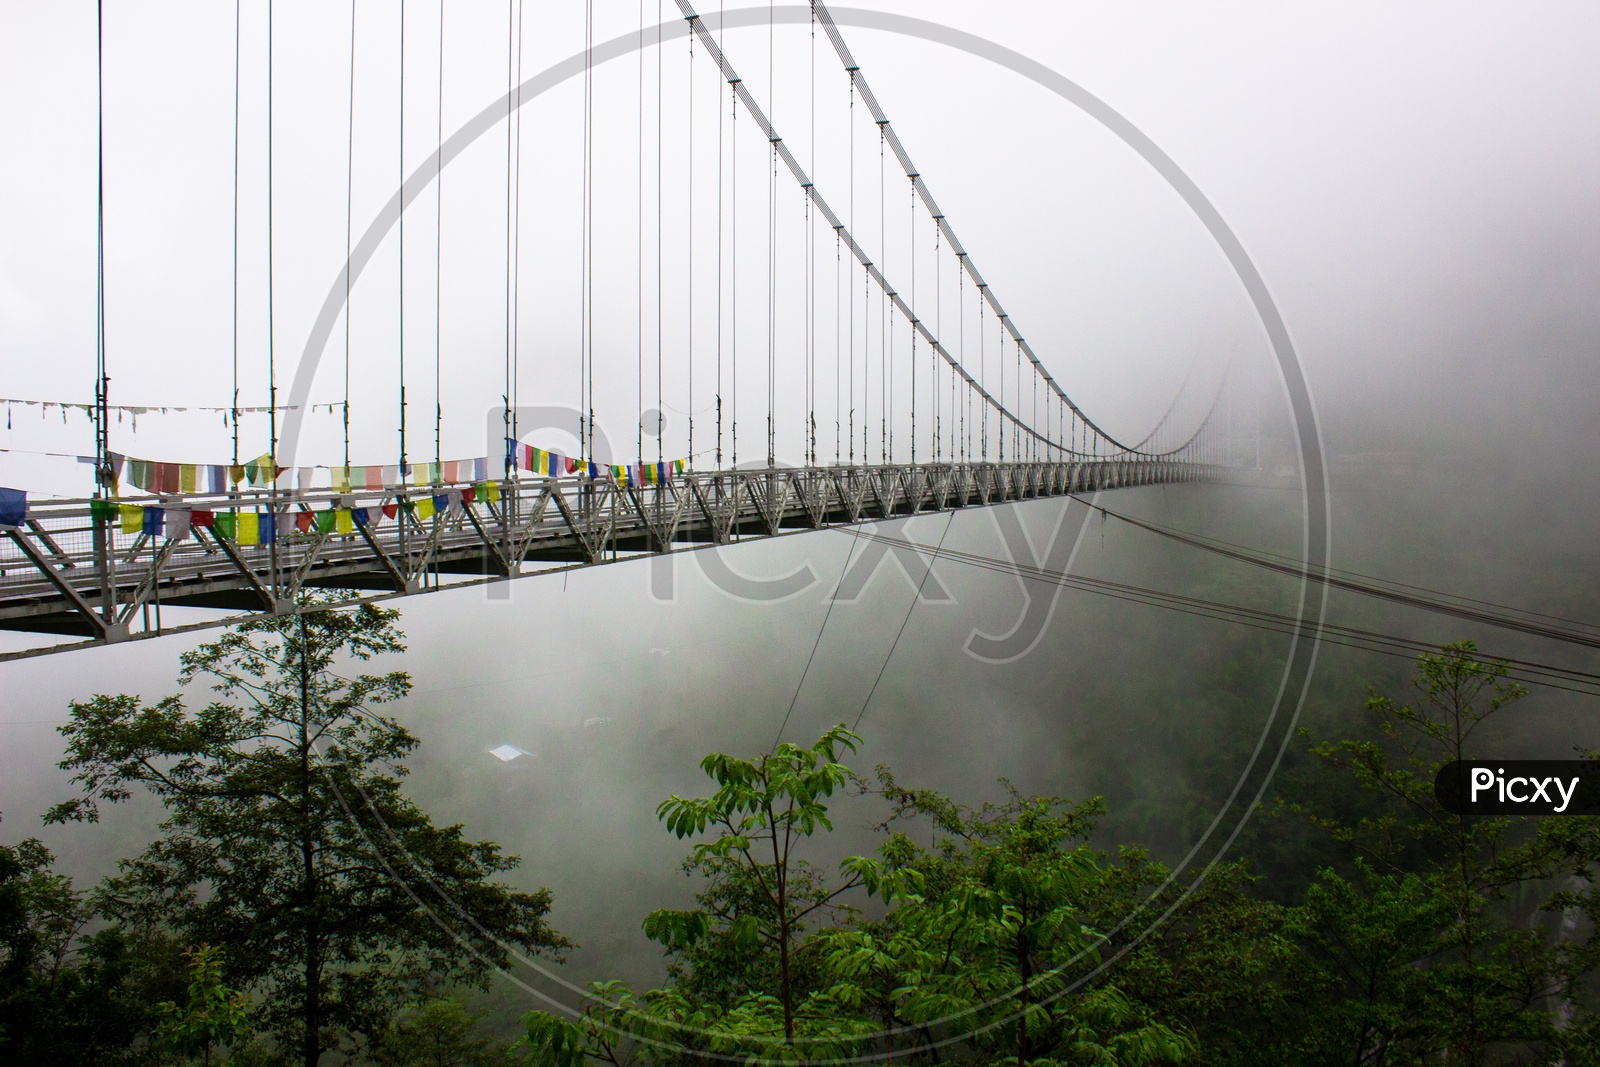 Singshore Bridge, Asia's second highest bridge